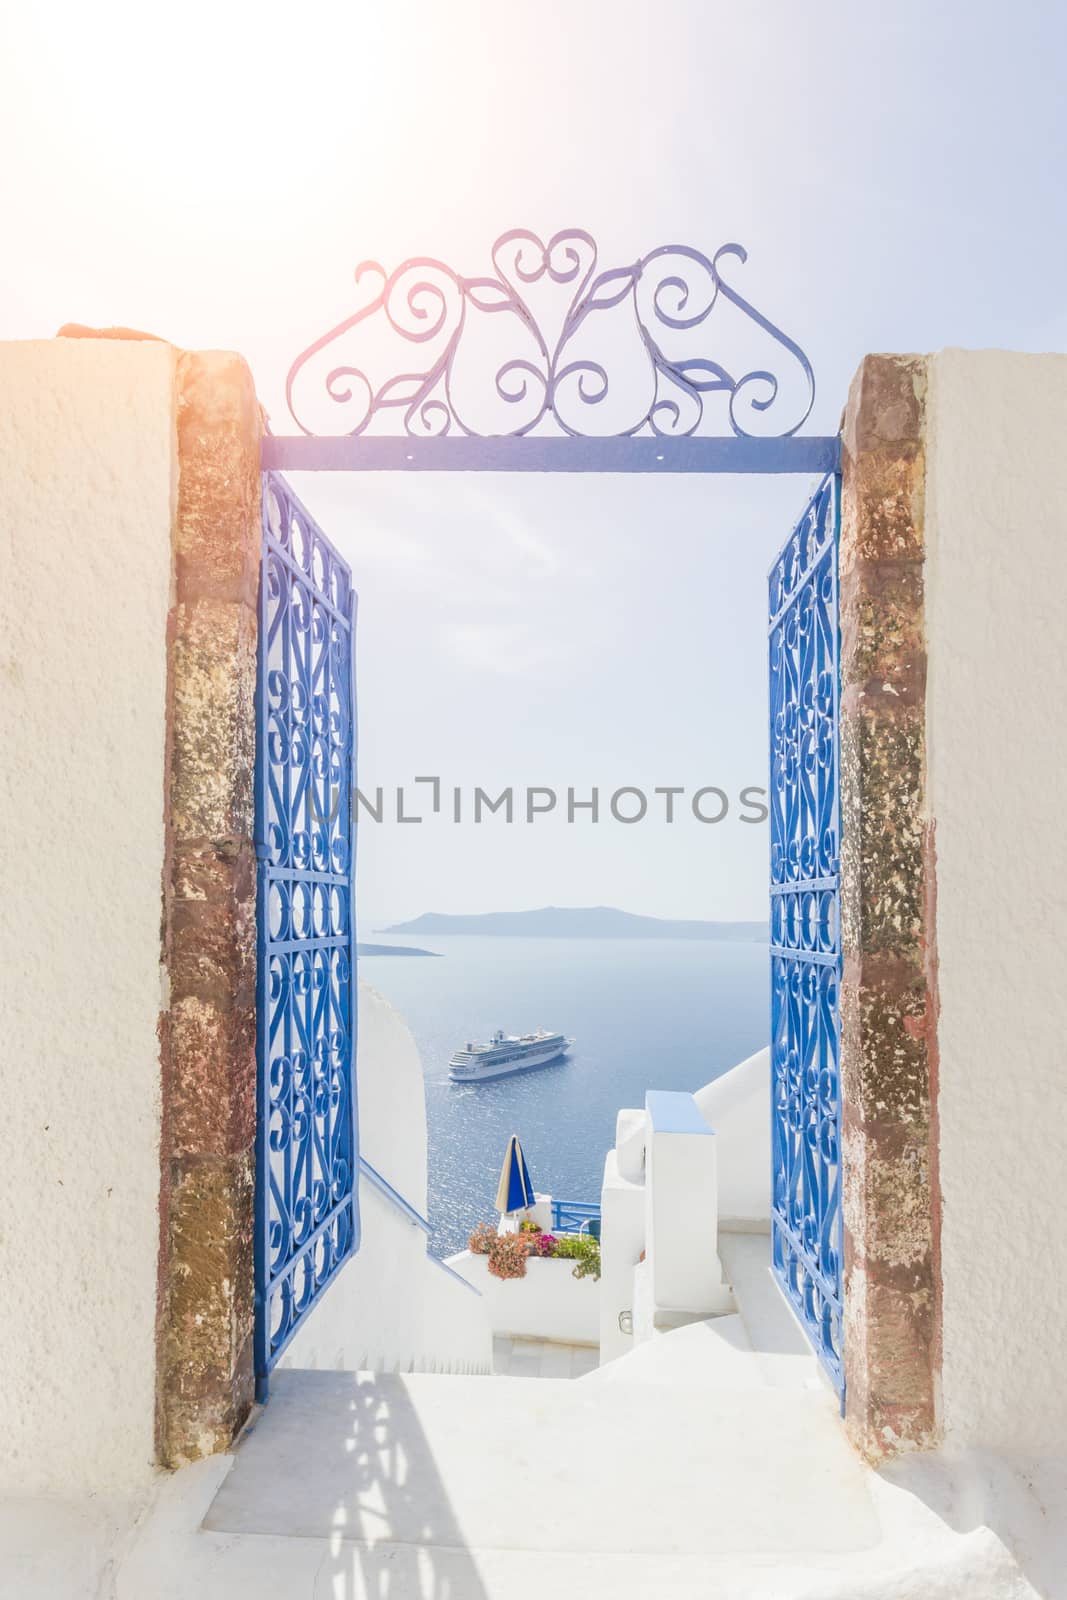 View on Fira in Santorini Greece